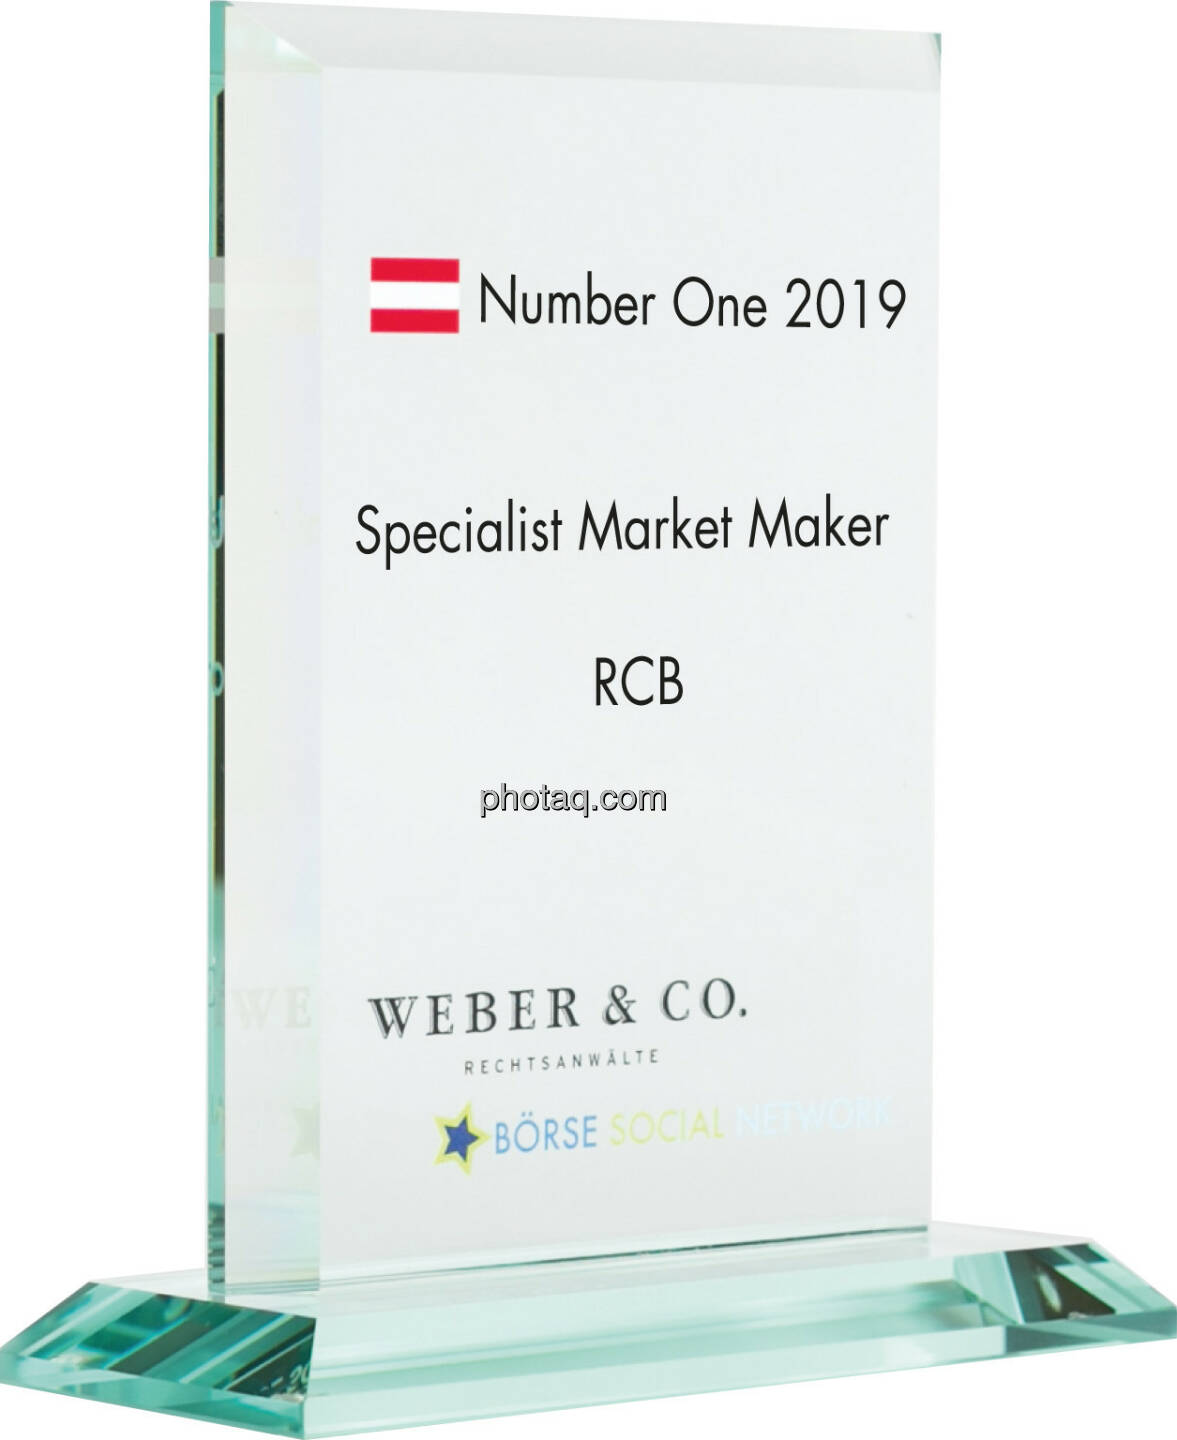 Number One Awards 2019 - Specialist Market Maker RCB